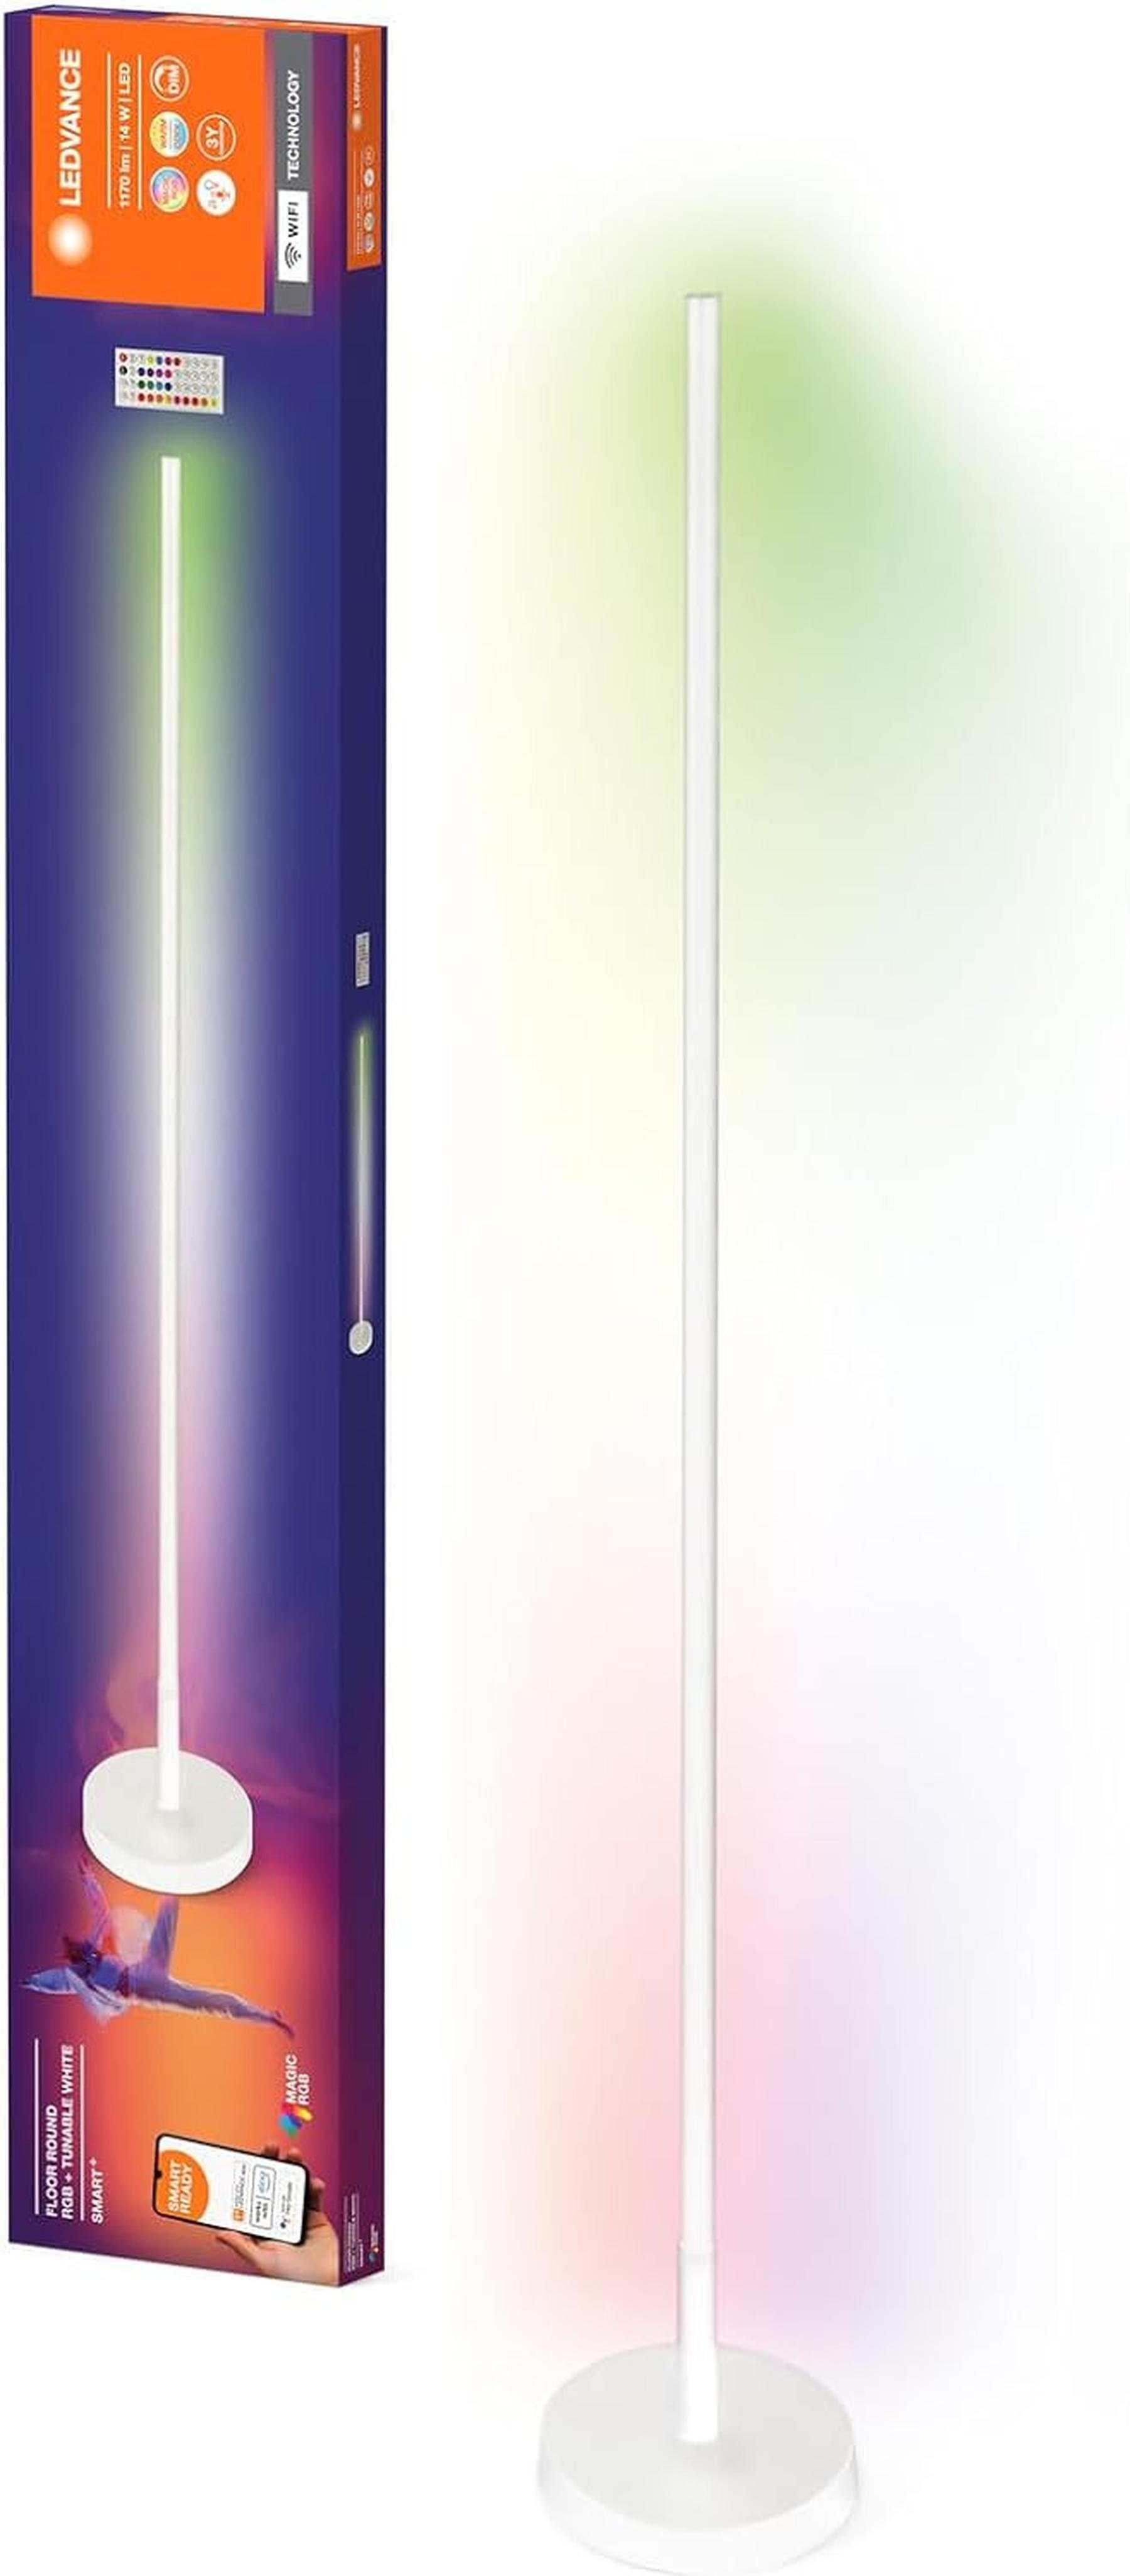 Weiß- LEDVANCE weiß, SMART+ 14W, 1170lm WIFI dimmbar, Stehlampe Ledvance Stehleuchte, LED Farblicht, & rund, dimmbar regulierbares